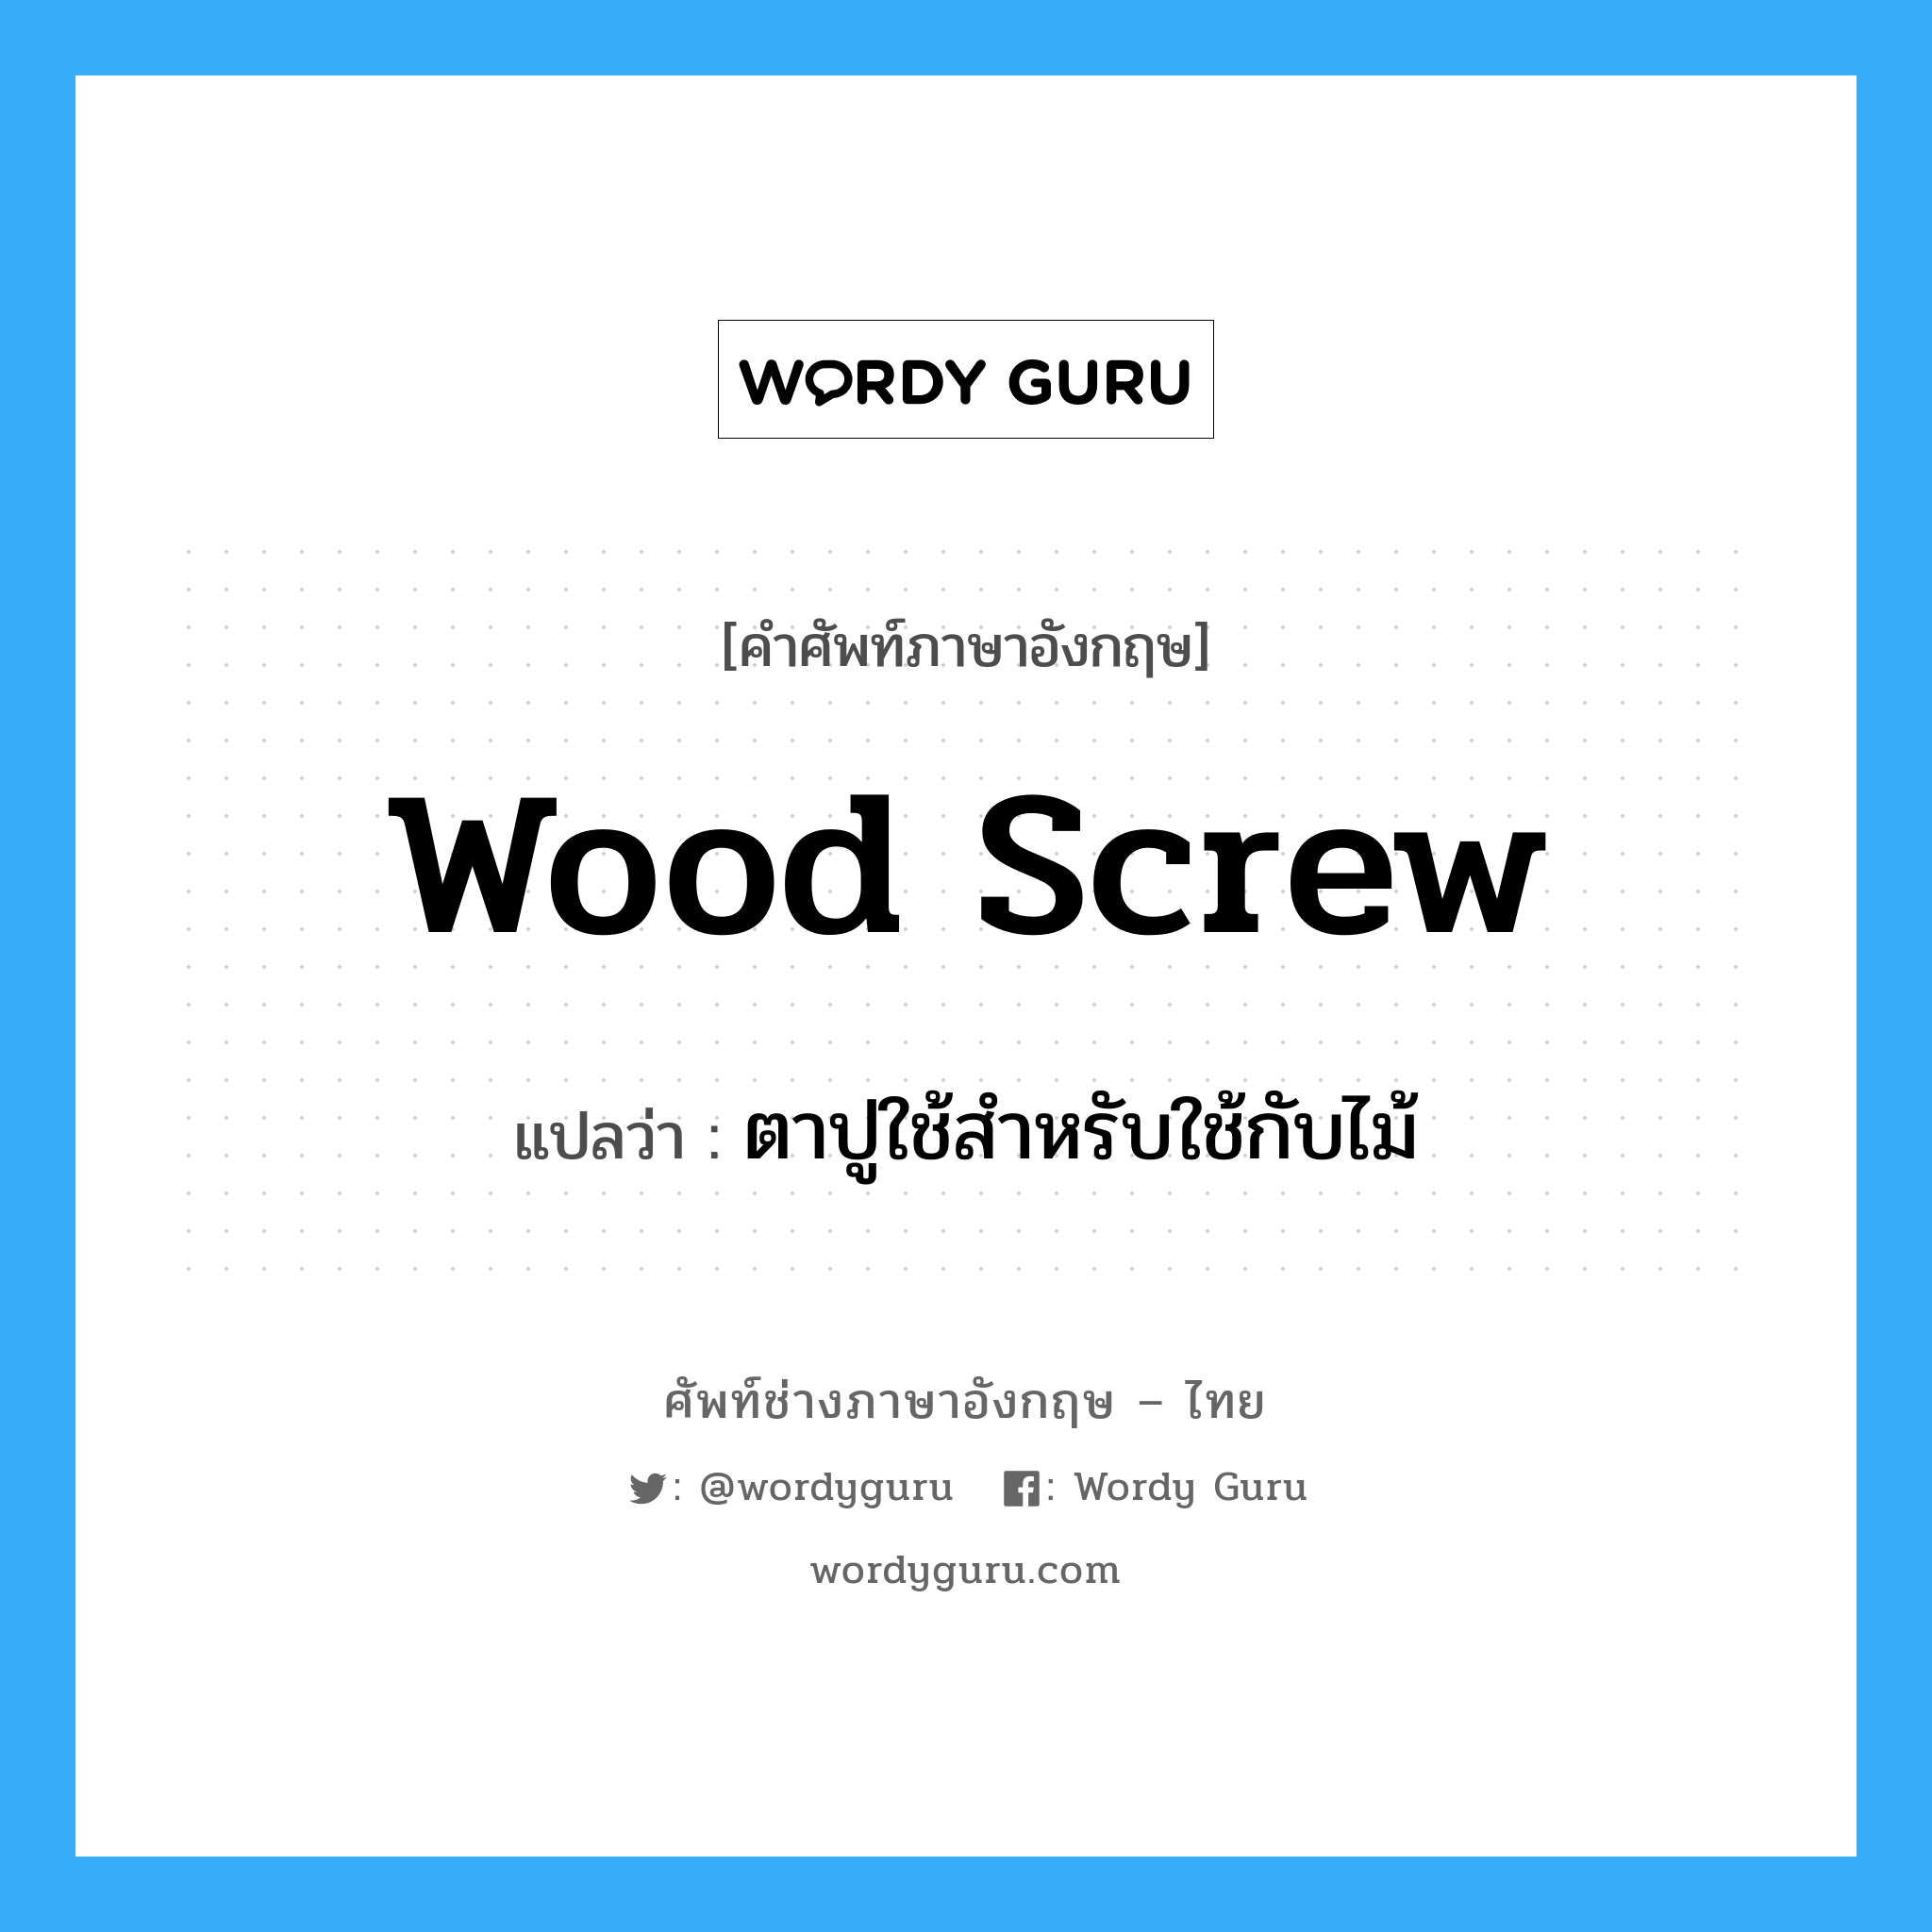 wood screw แปลว่า?, คำศัพท์ช่างภาษาอังกฤษ - ไทย wood screw คำศัพท์ภาษาอังกฤษ wood screw แปลว่า ตาปูใช้สำหรับใช้กับไม้